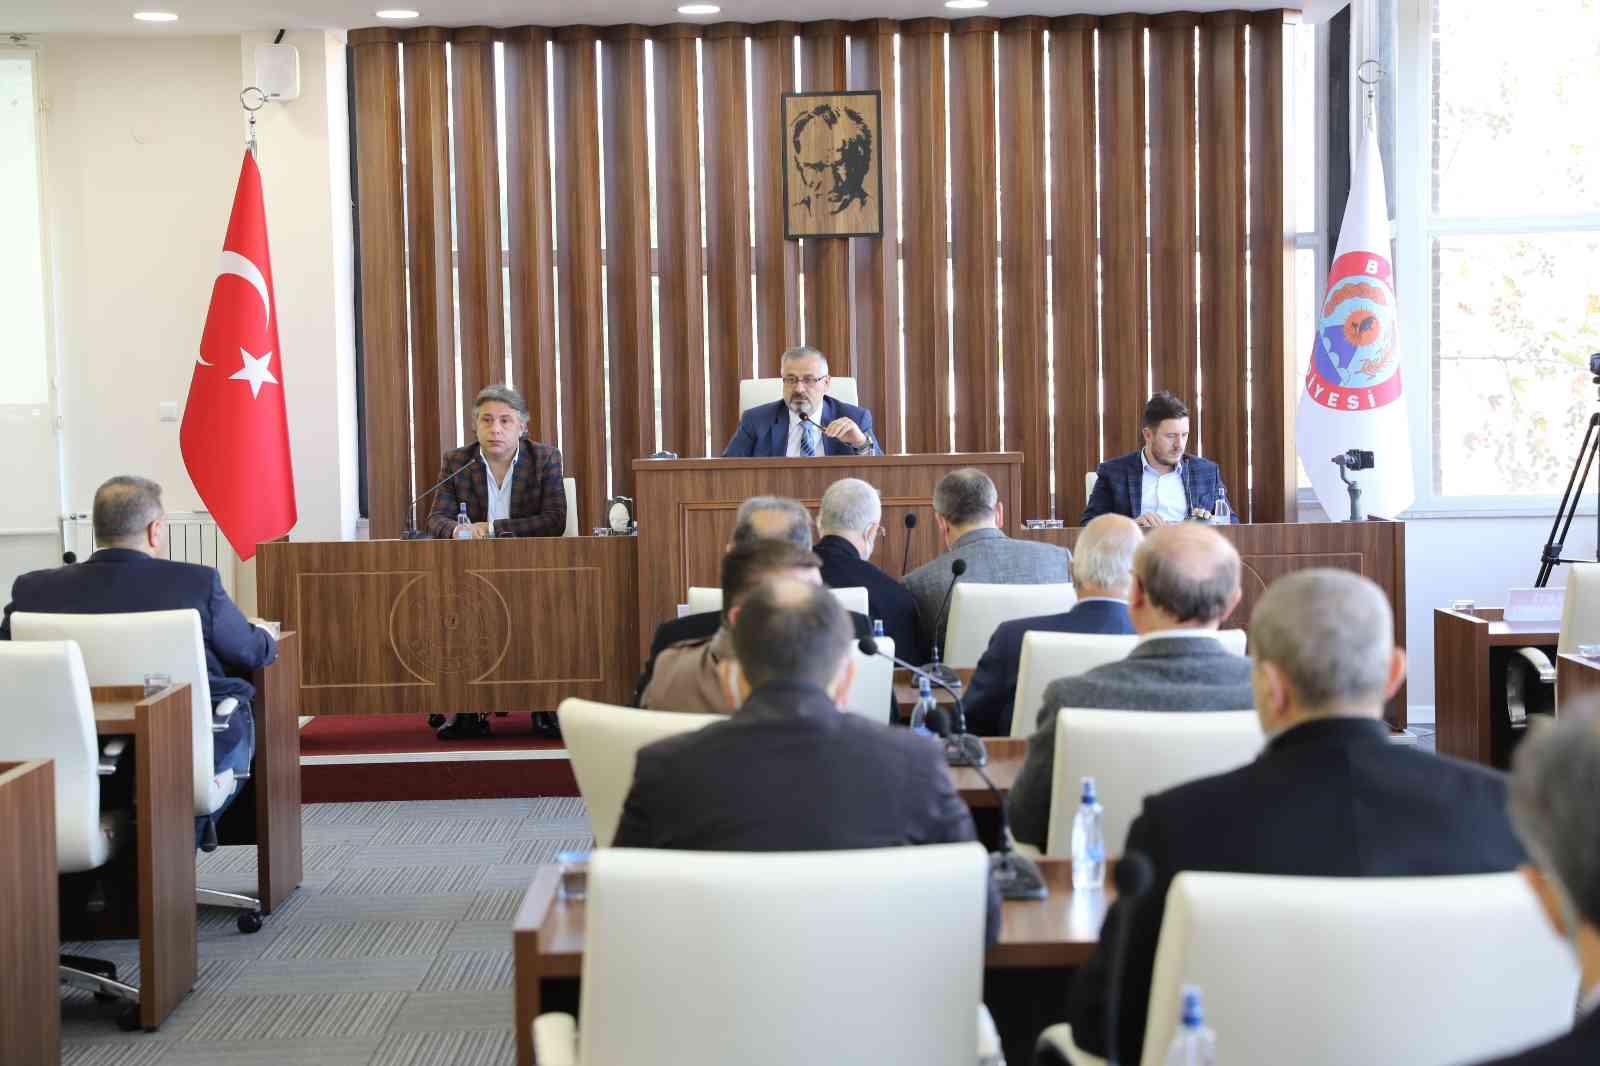 Bafra meclisi toplandı #samsun